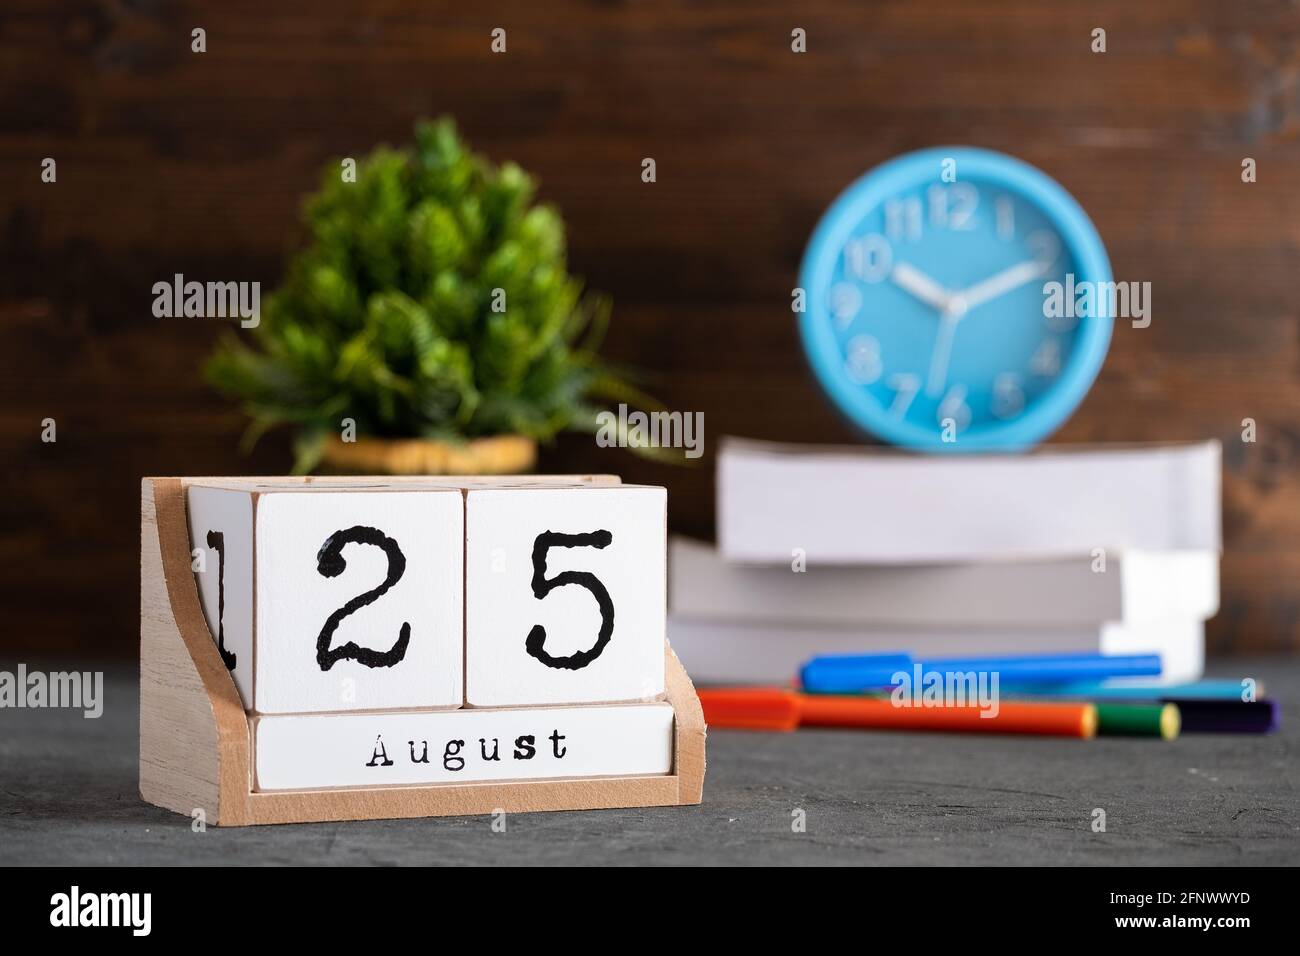 25 août. Août 25 calendrier cube en bois avec des objets flous sur fond. Banque D'Images